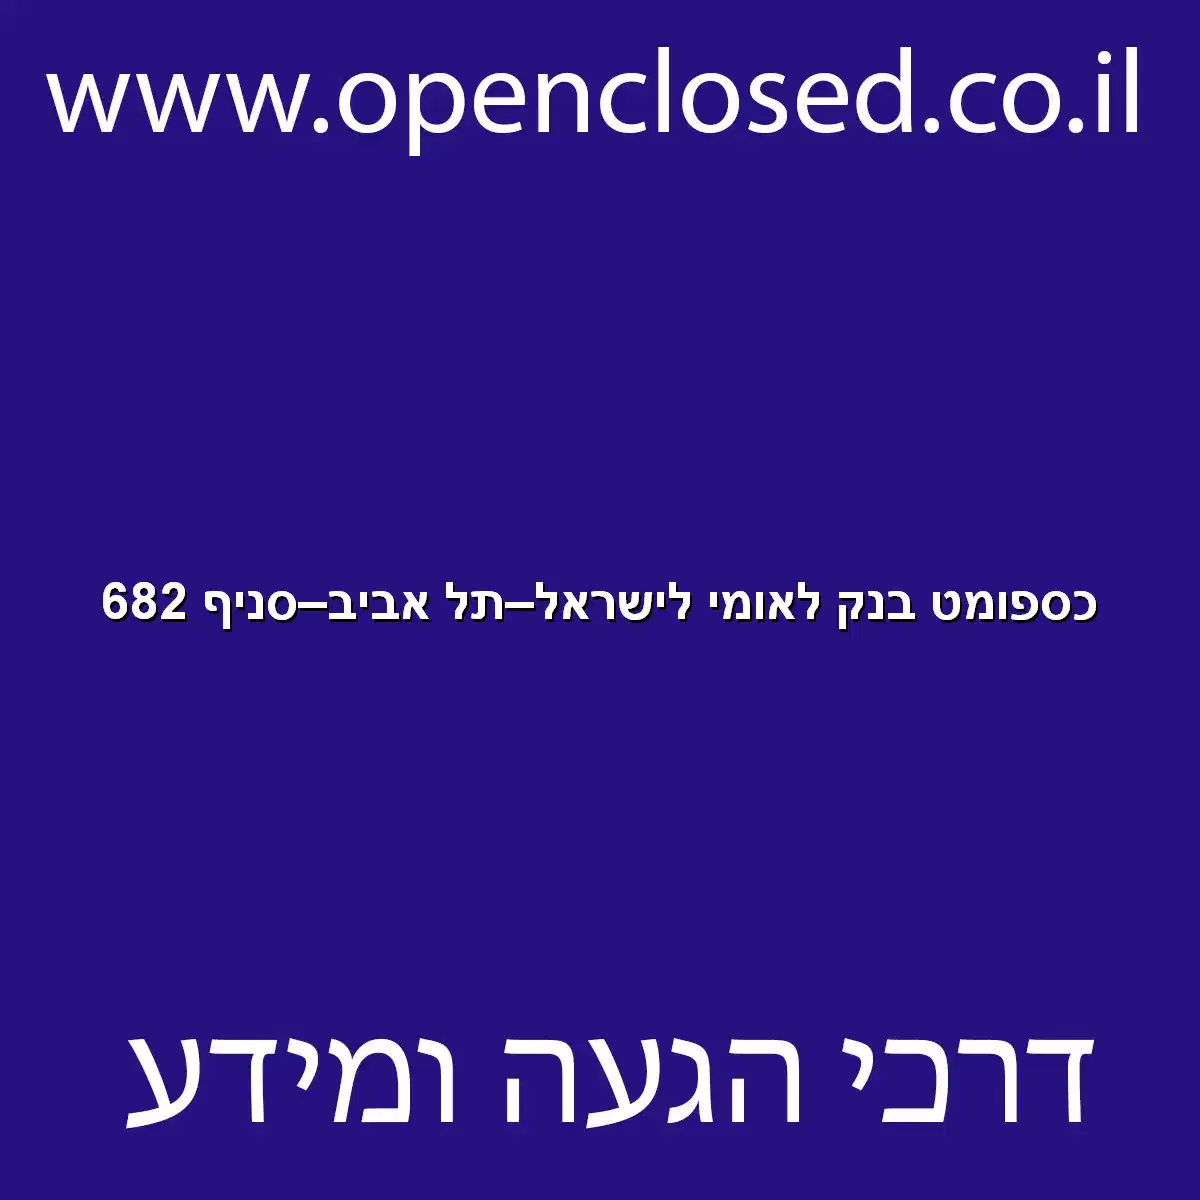 כספומט בנק לאומי לישראל תל אביב סניף 682